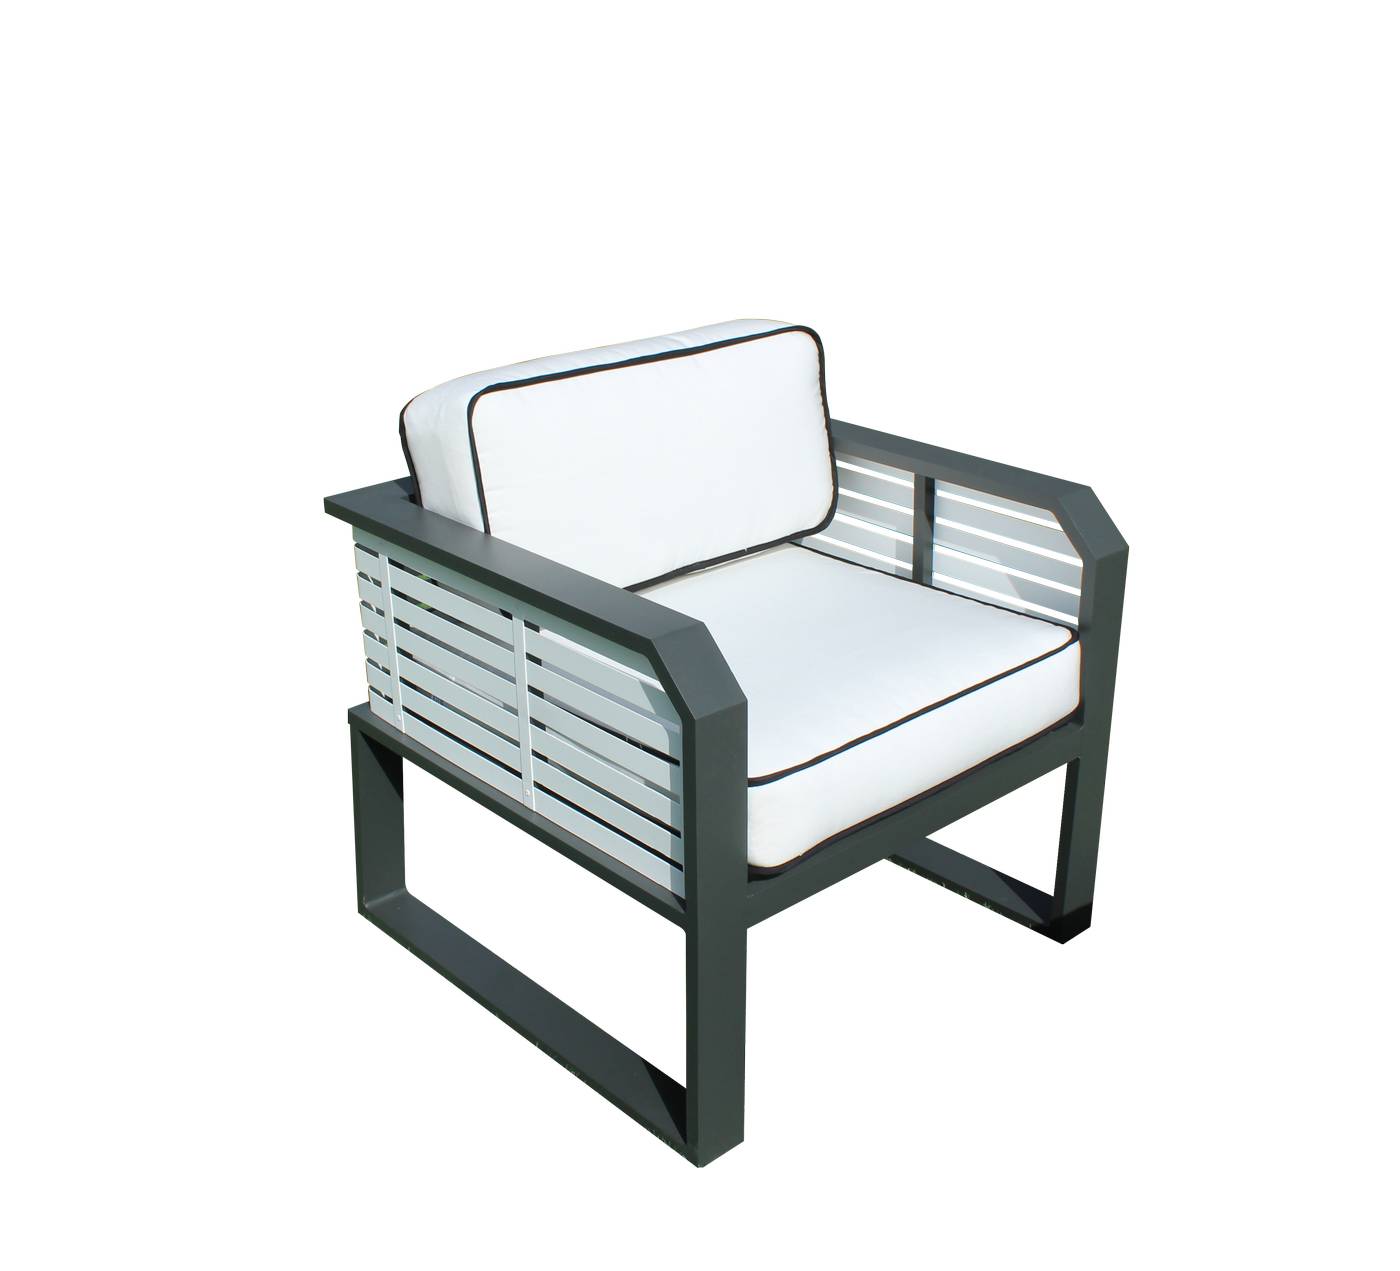 Sillón Aluminio Sira-1 - Coqueto sillón relax de alumnio bicolor, con cojines gran confort desenfundables.